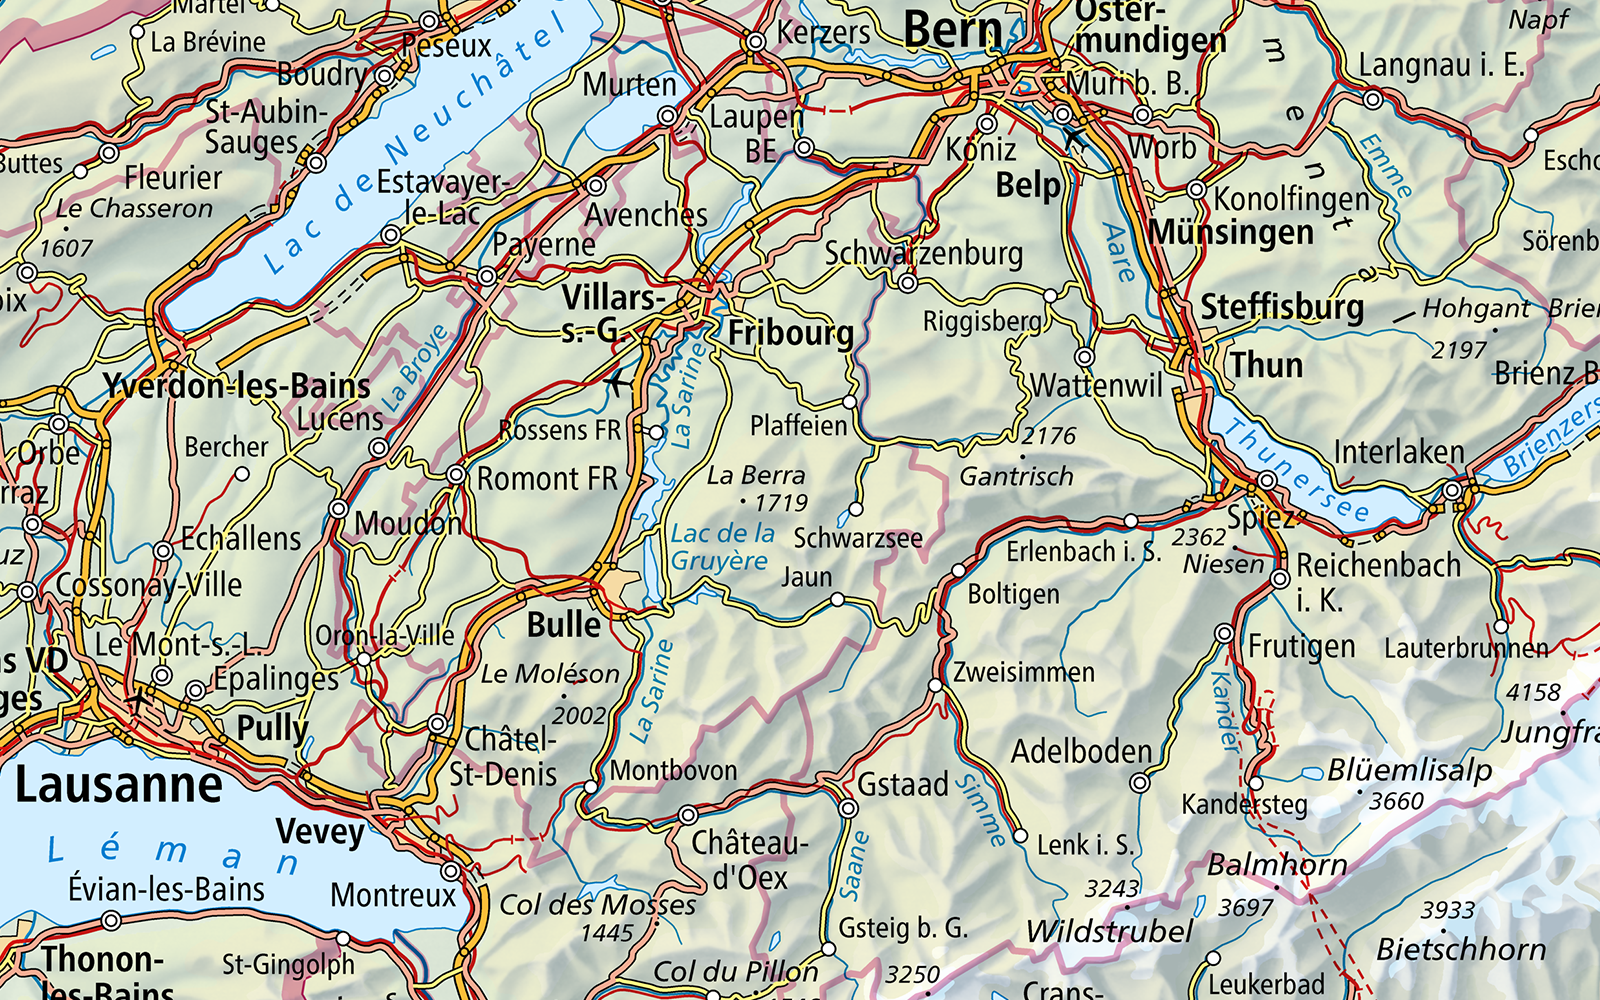 L'immagine mostra una sezione della Swiss Map Raster 1000 dell'area Losanna - Berna - Interlaken.